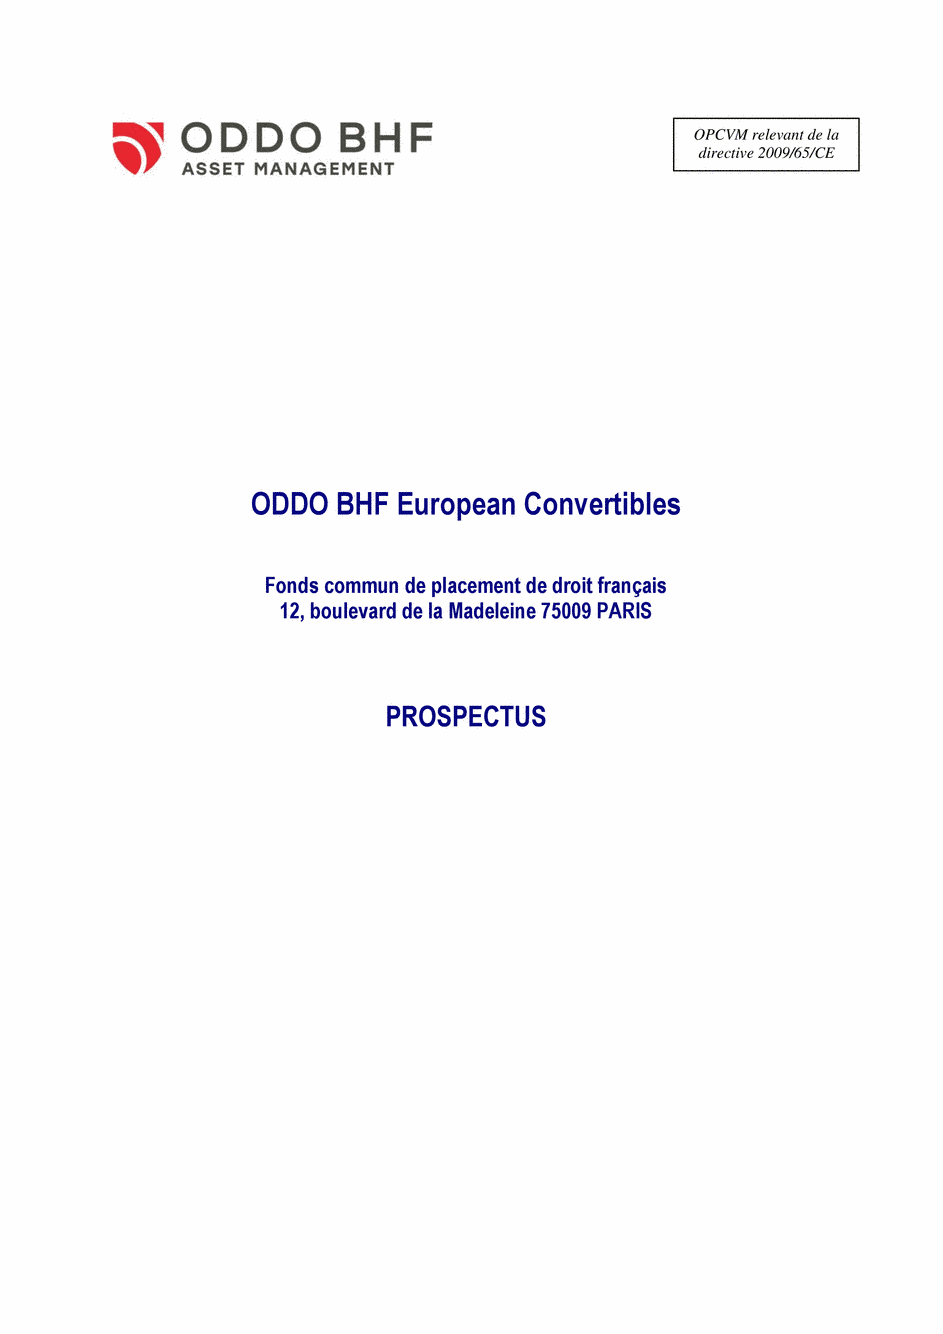 Prospectus ODDO BHF EUROPEAN CONVERTIBLES DI-EUR - 24/08/2020 - Français